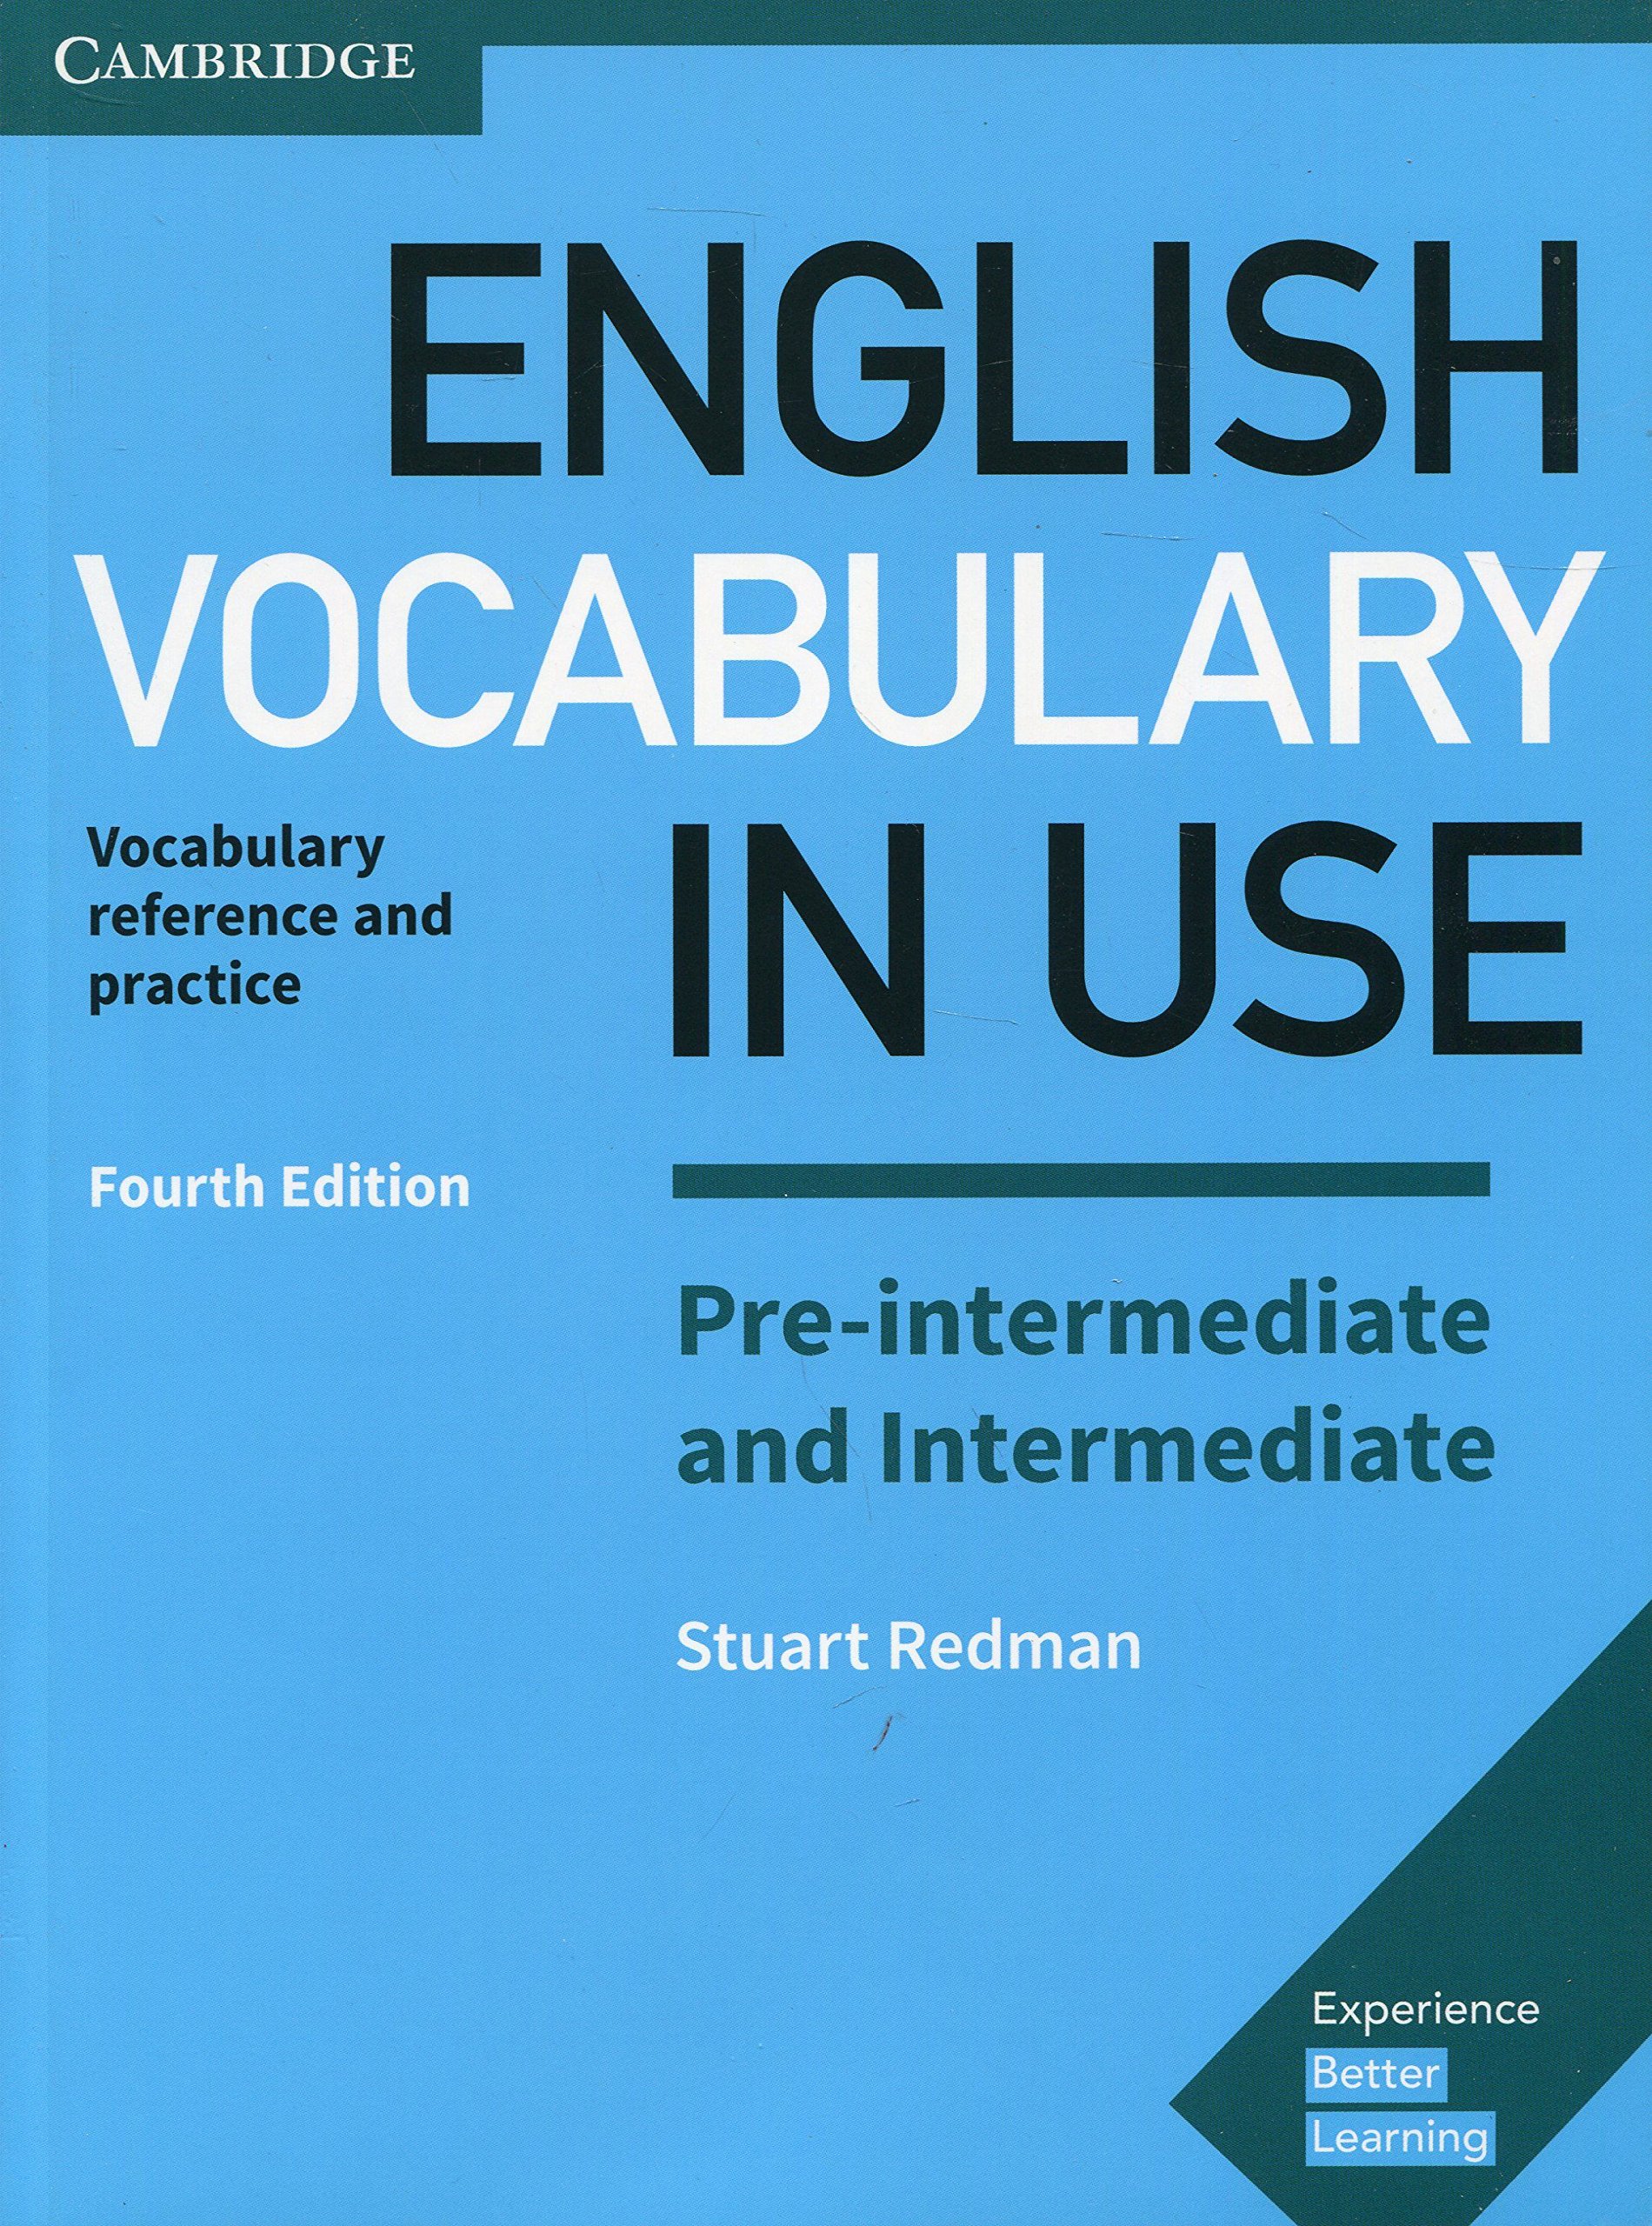 Cambridge English vocabulary in use -Pre Intermediate and Intermediate